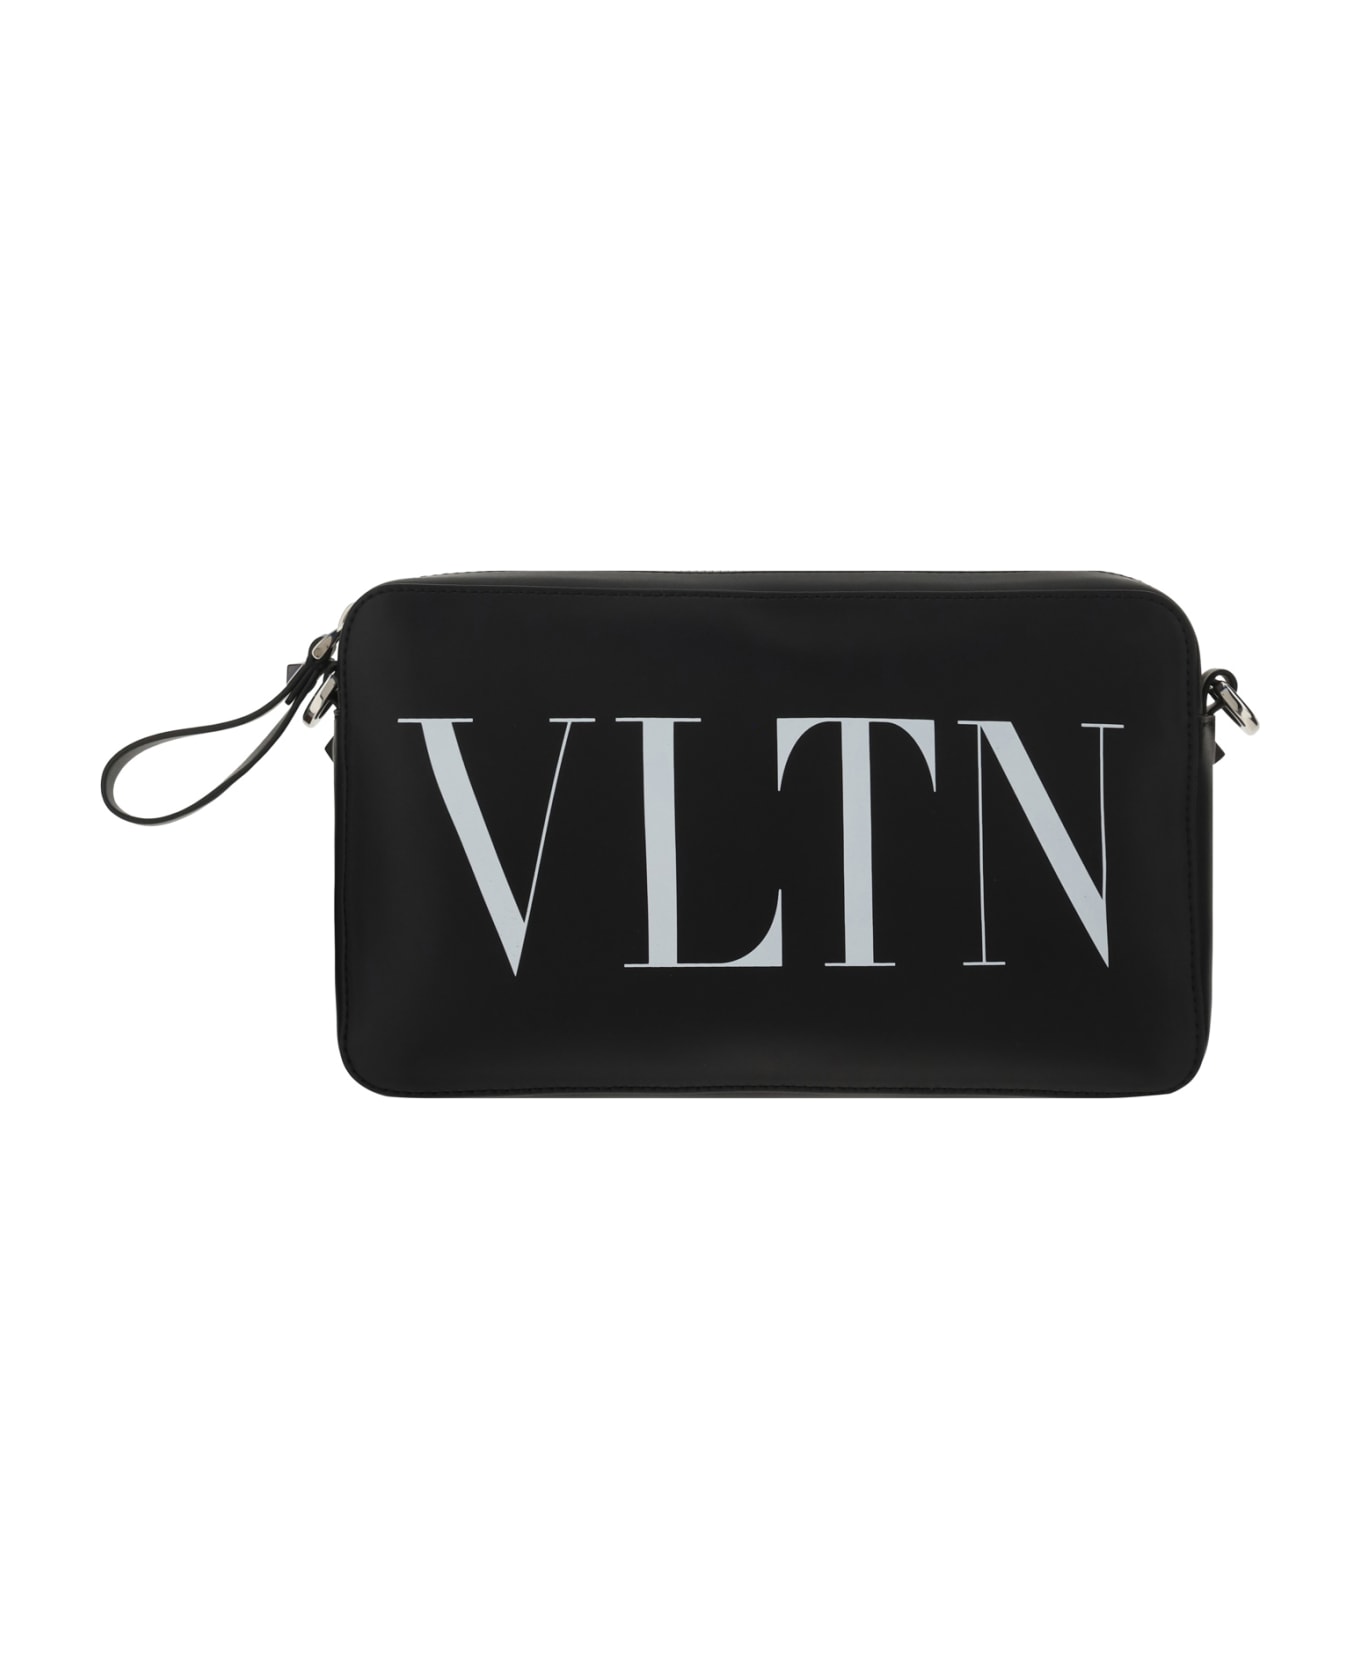 Valentino Garavani Vltn Shoulder Bag - Black